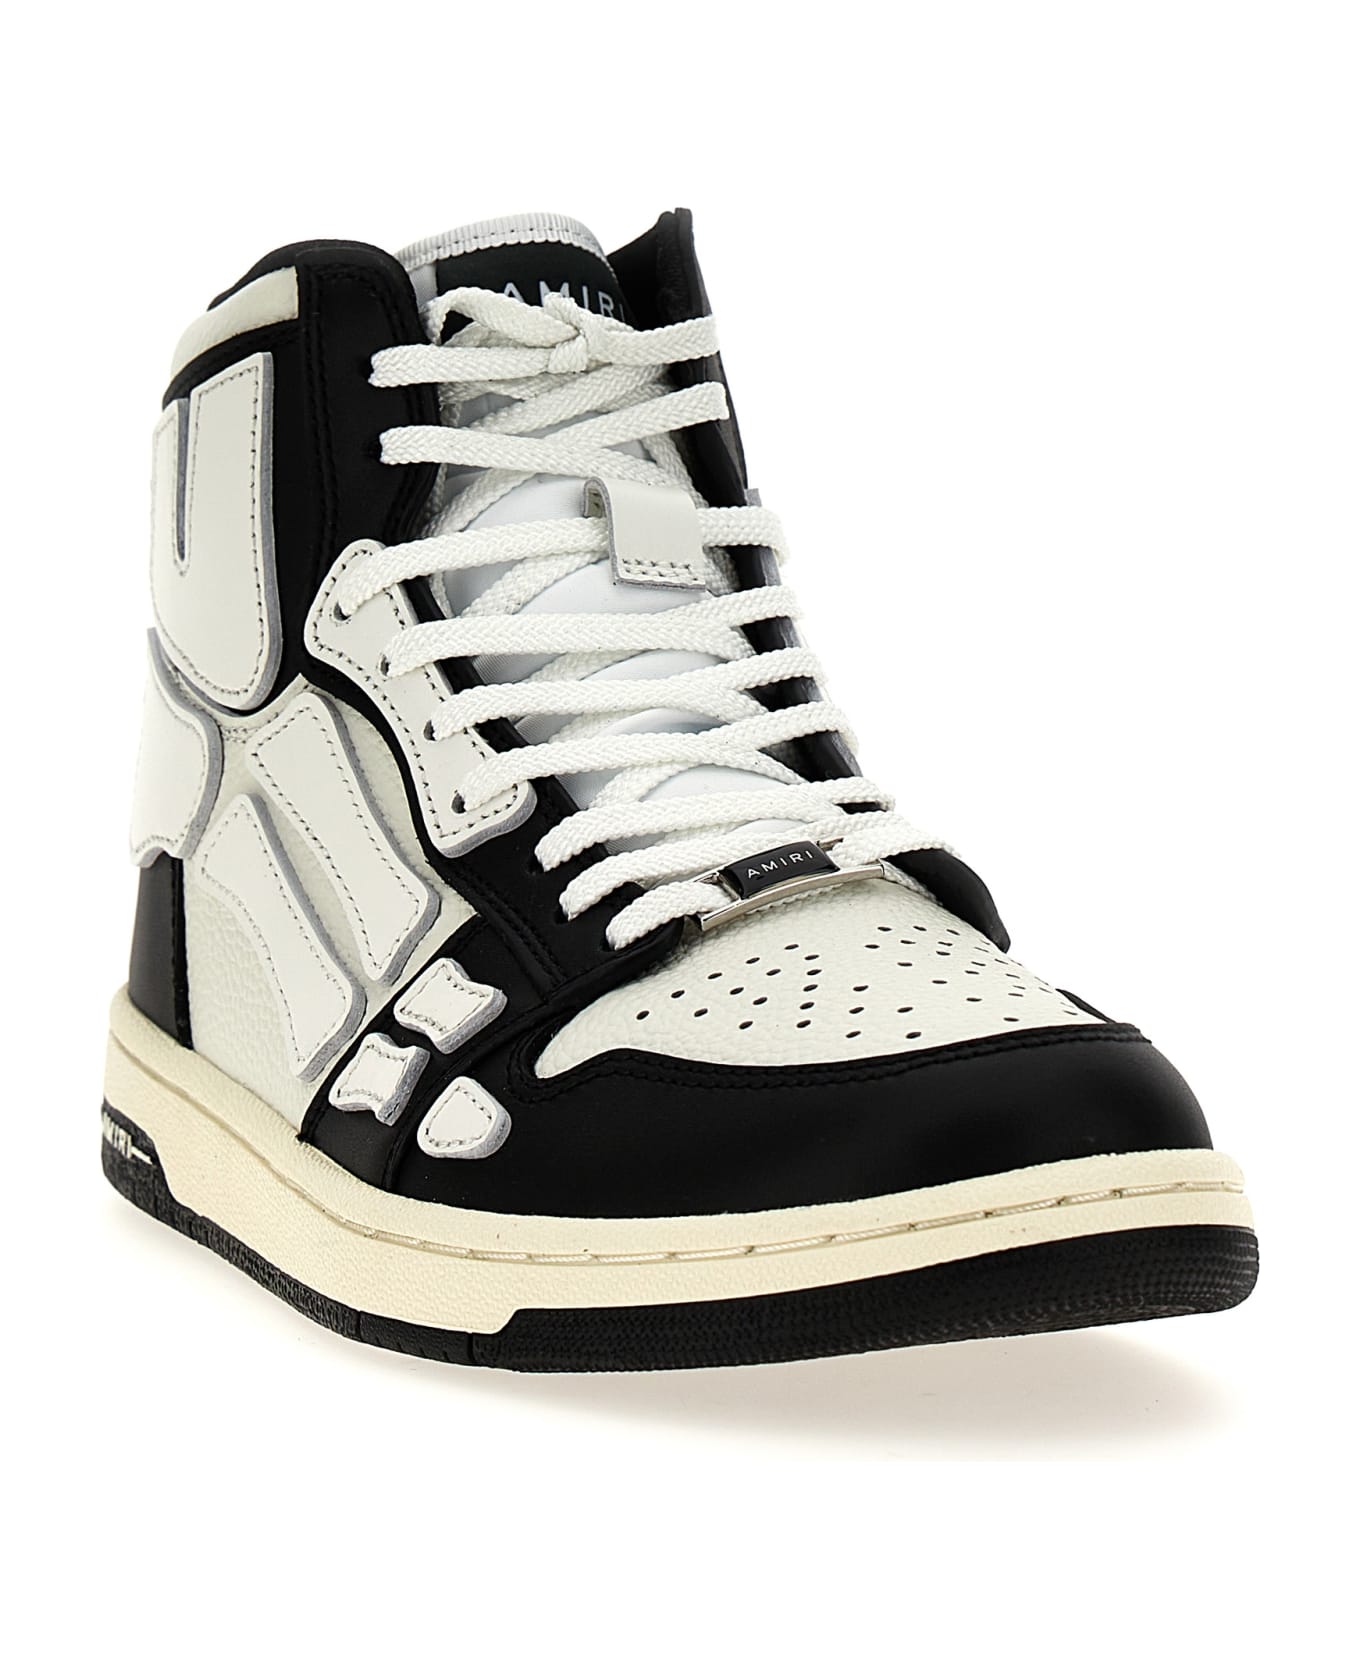 AMIRI 'skel Top Hi' Sneakers - White/Black